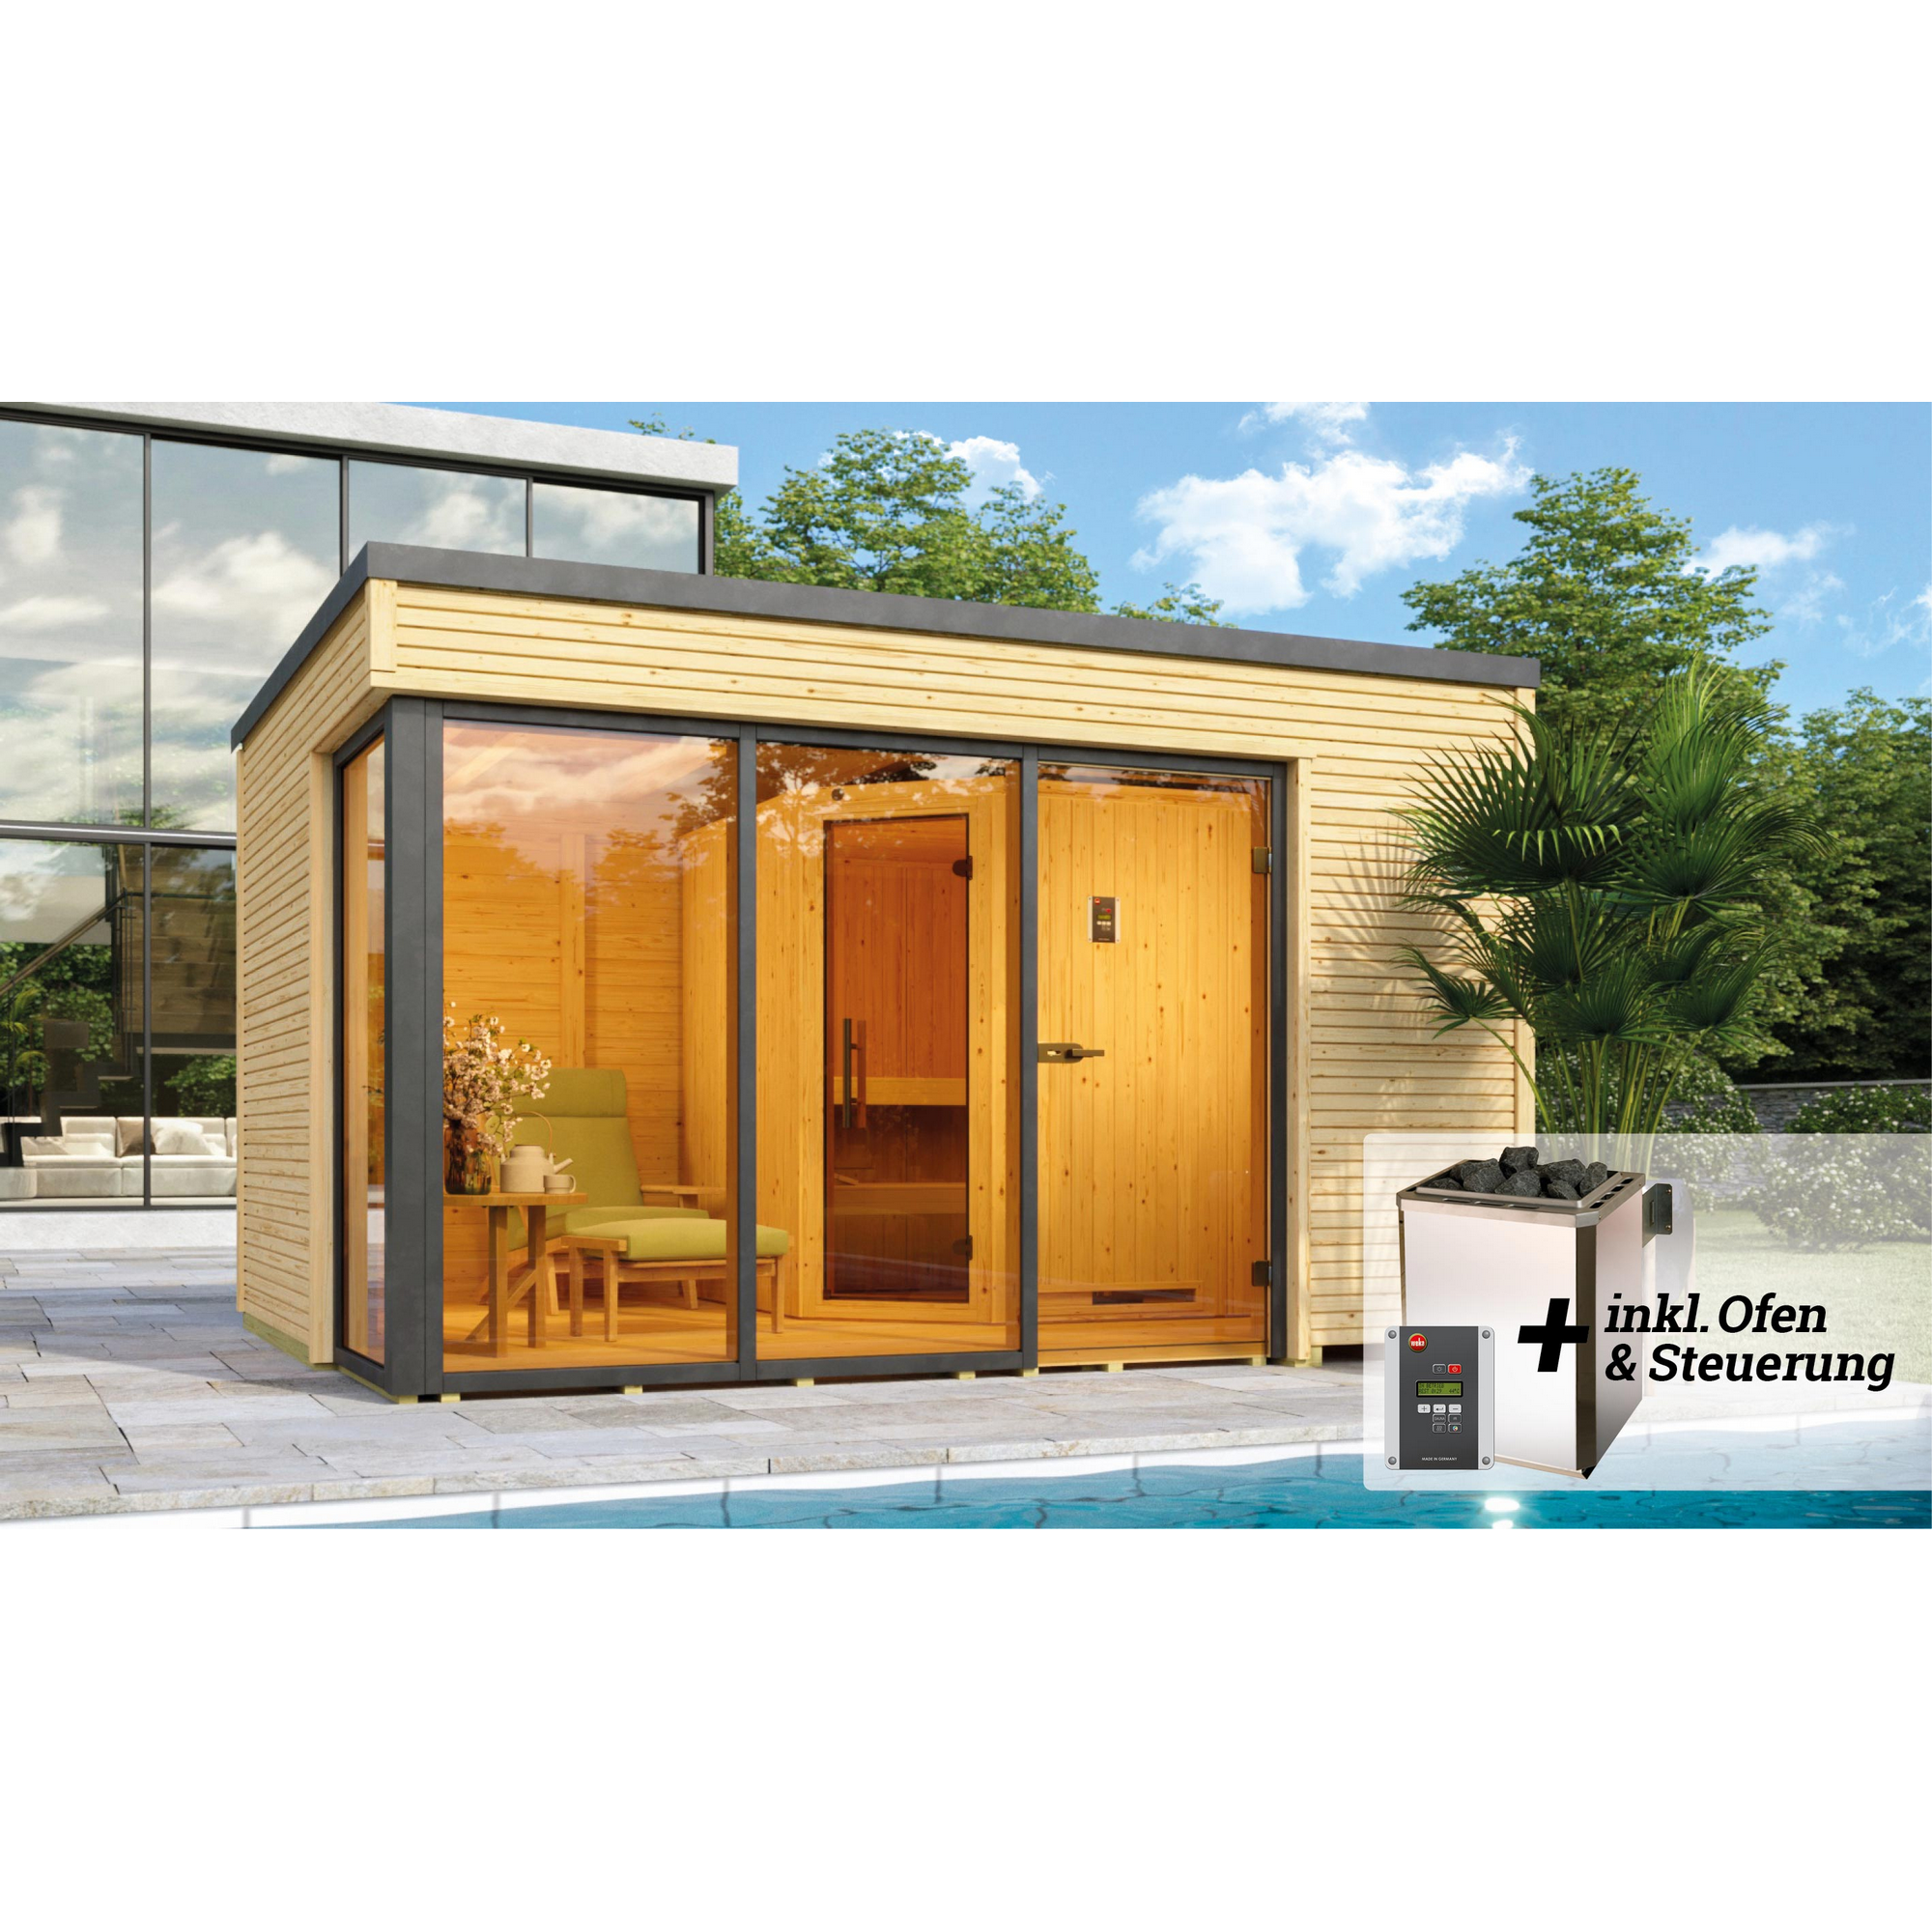 Design-Saunahaus 'Cubilis' mit Sauna Varberg 3 und 7,5 kW OS-Ofenset, Steuerung 380 x 300 x 249 cm + product picture